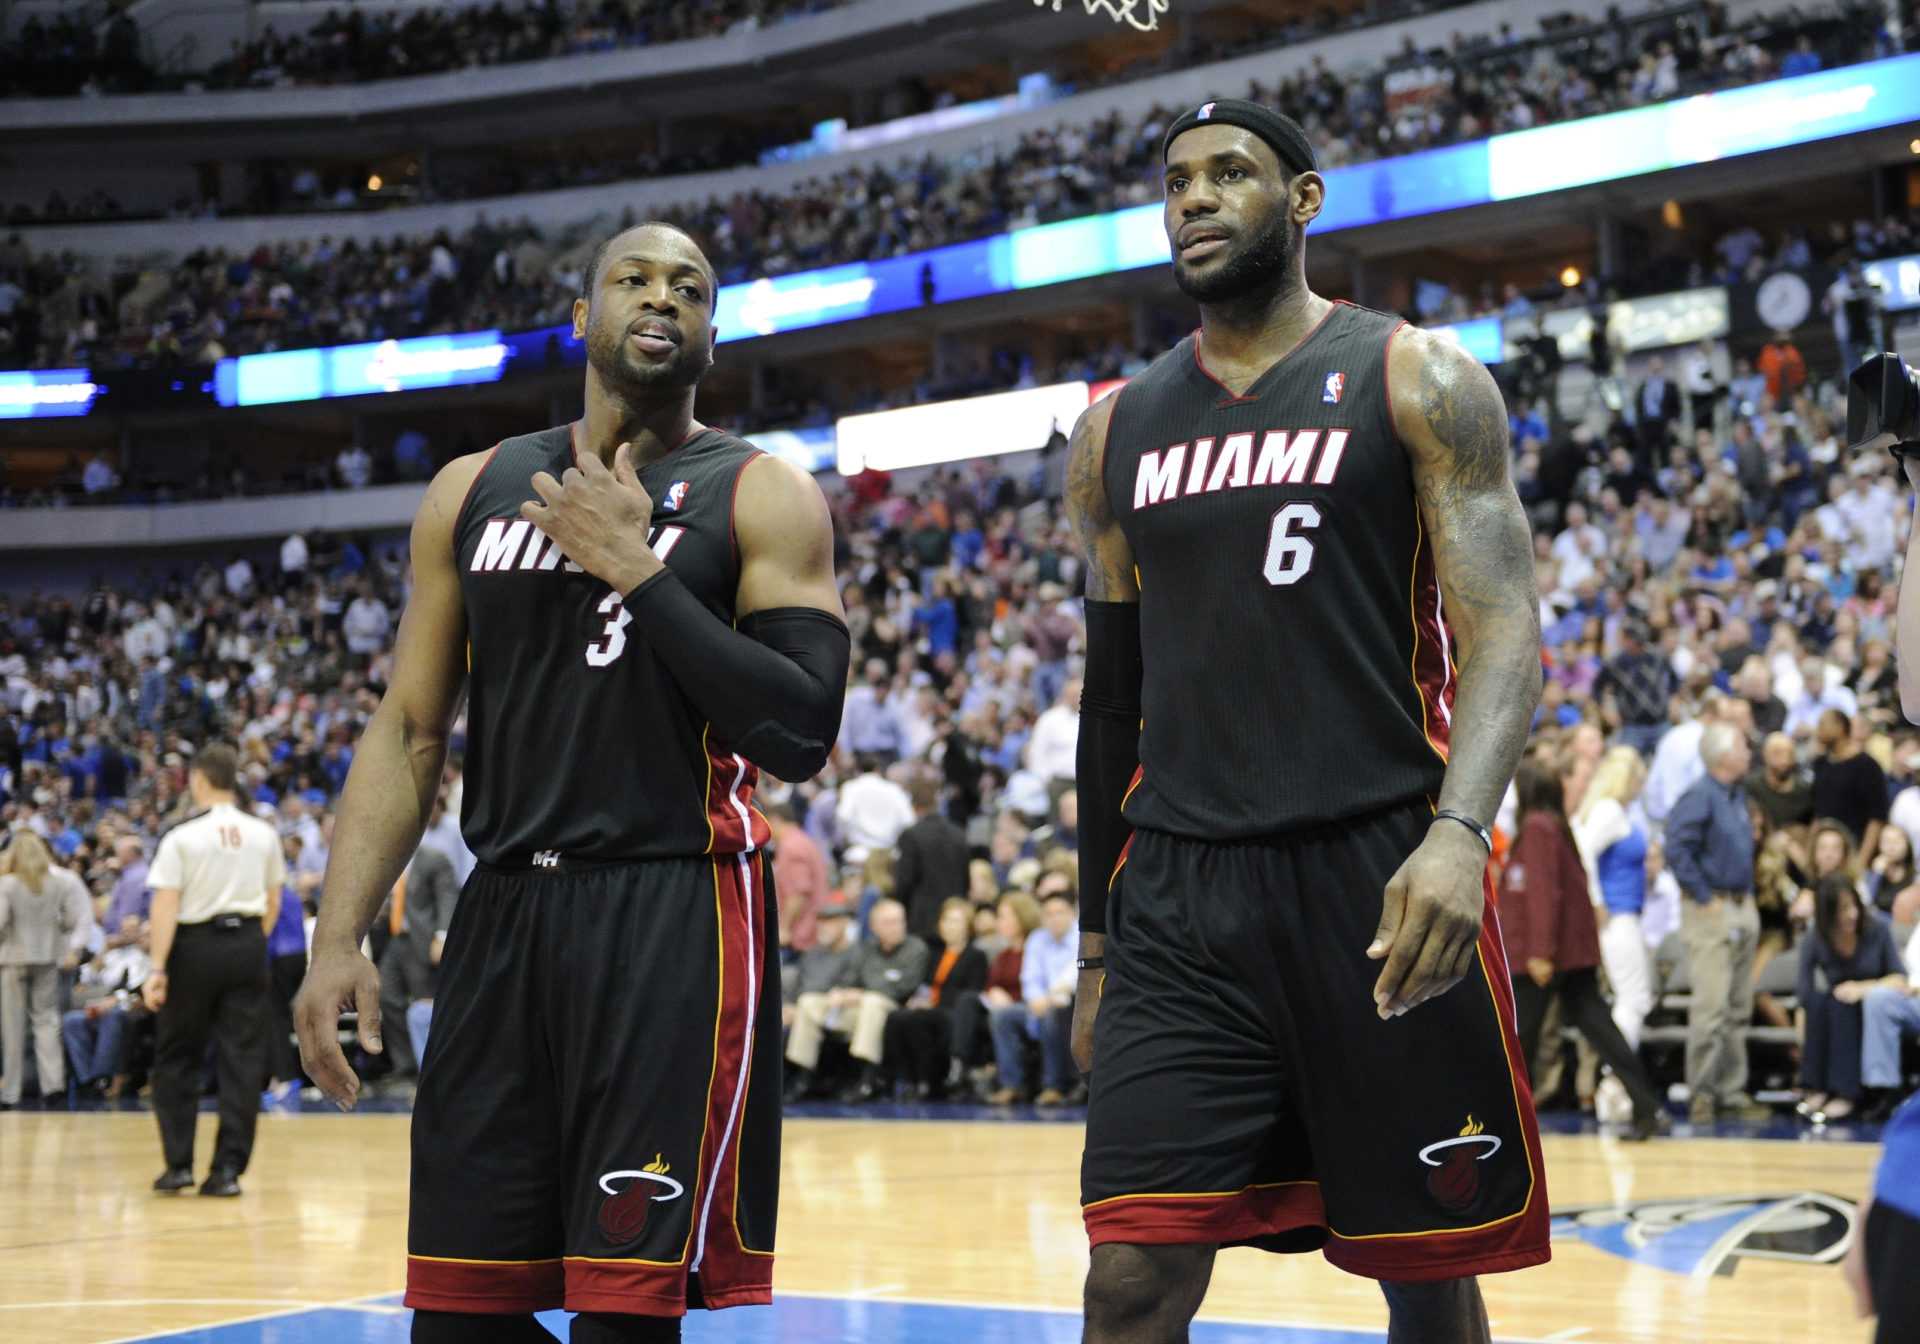 `` Probablement une erreur '': la légende de Miami Heat révèle que l'équipe n'a pas aimé ses courses de championnat